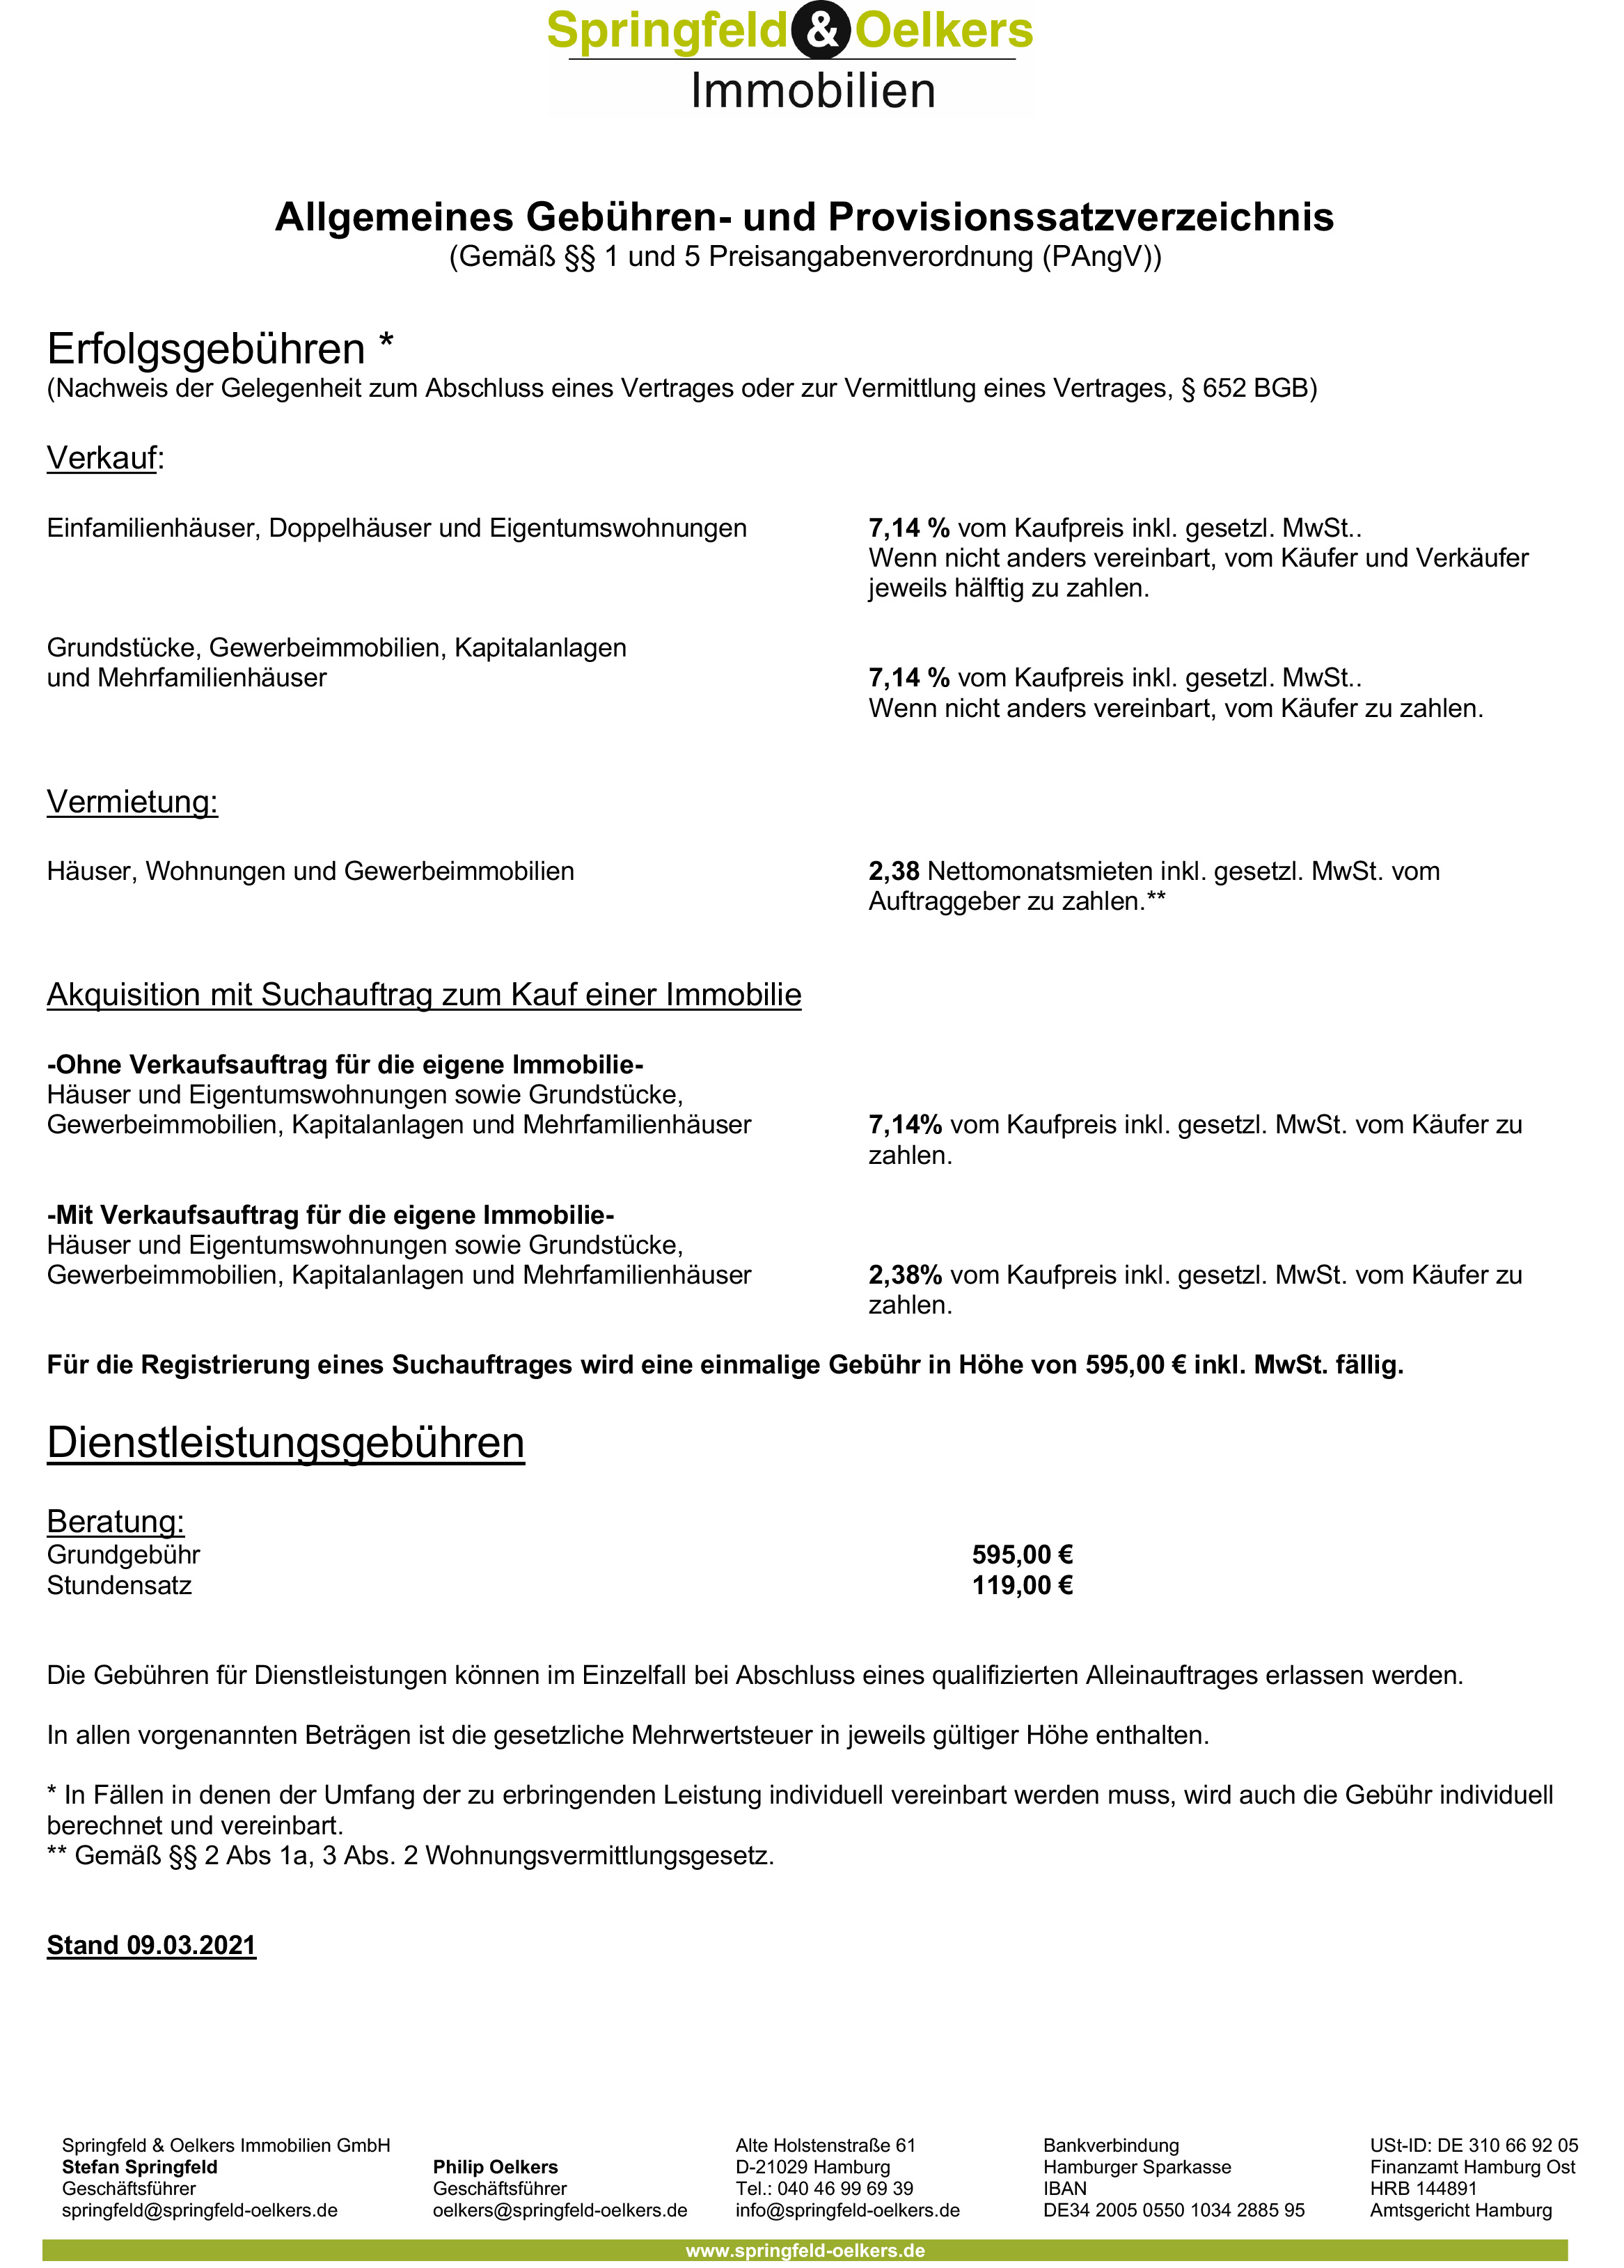 Springfeld und Oelkers Immobilien GmbH Gebuerenverzeichnis